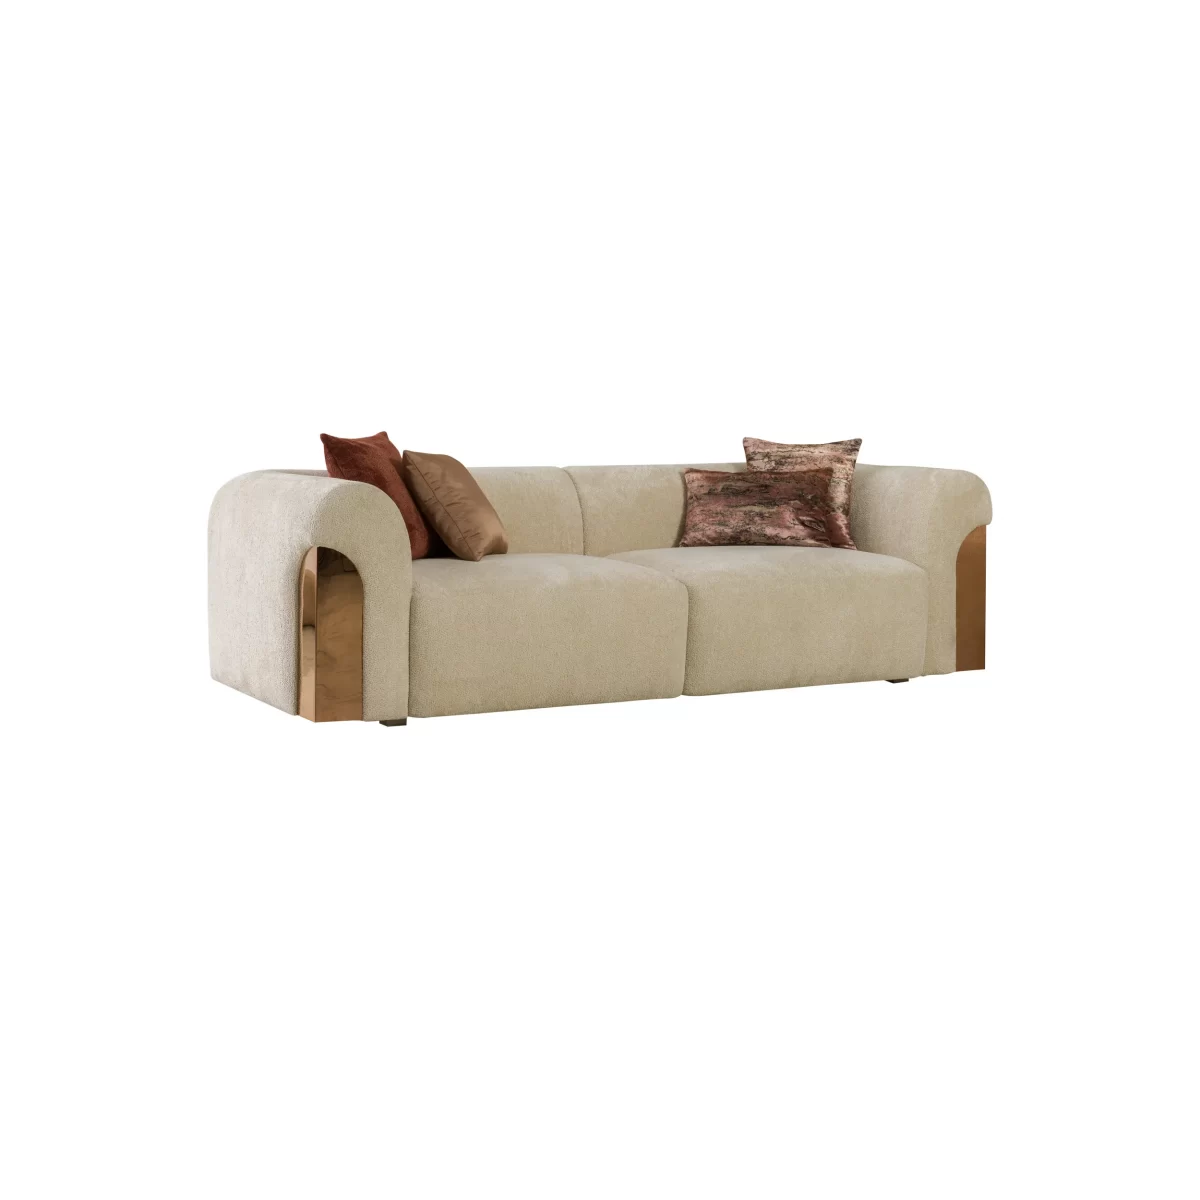 Aerro Sofa Set Premium Living Room Furniture 2